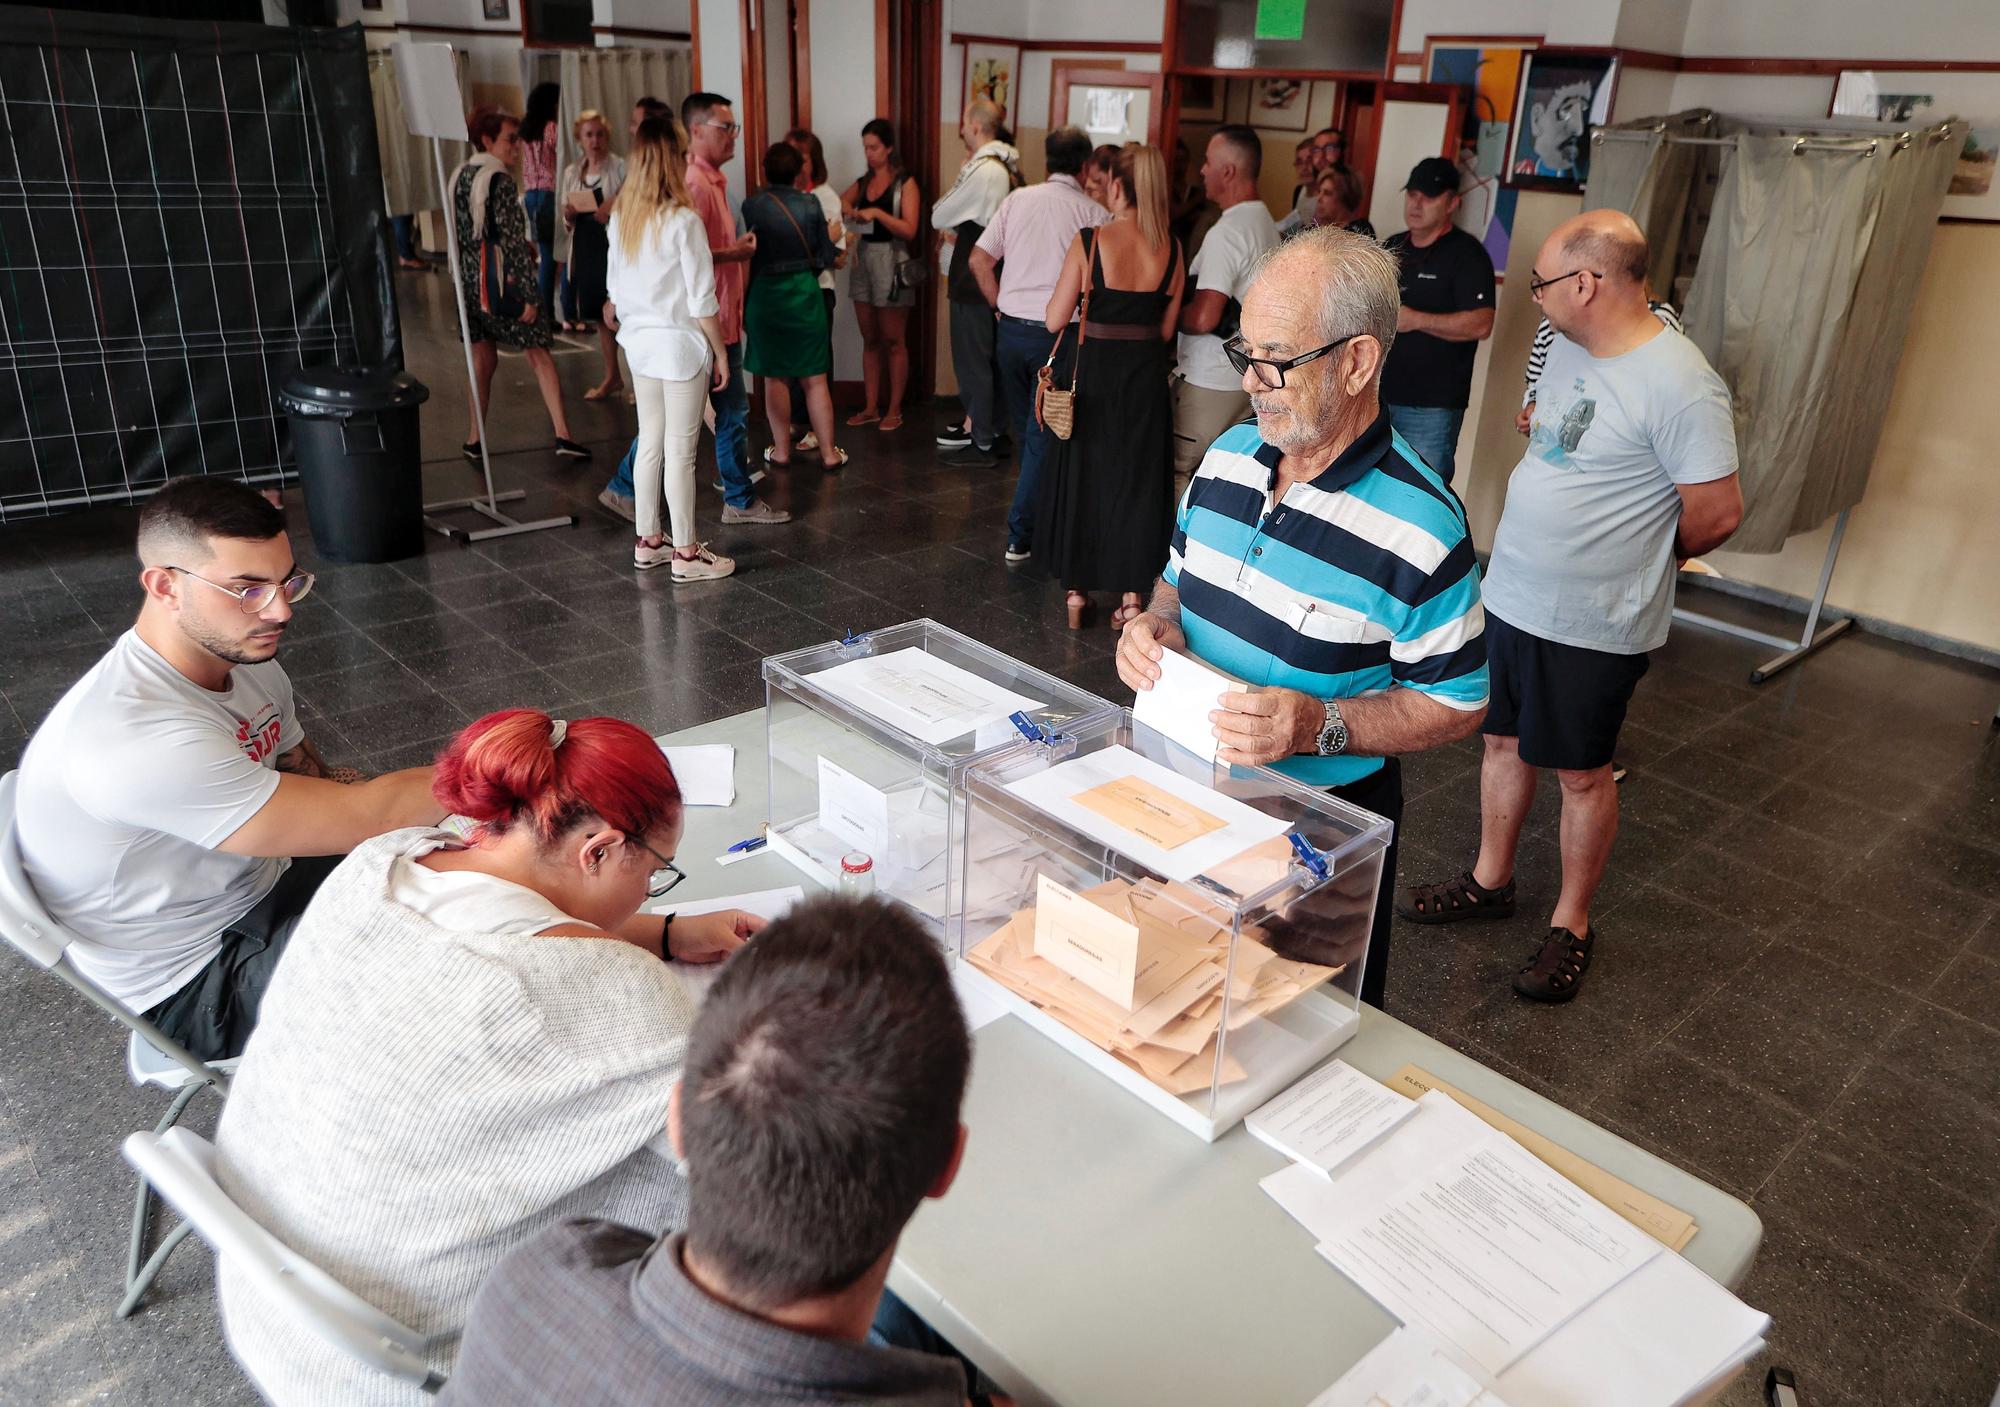 Ambiente de las jornada de elecciones generales del 23J en Tenerife